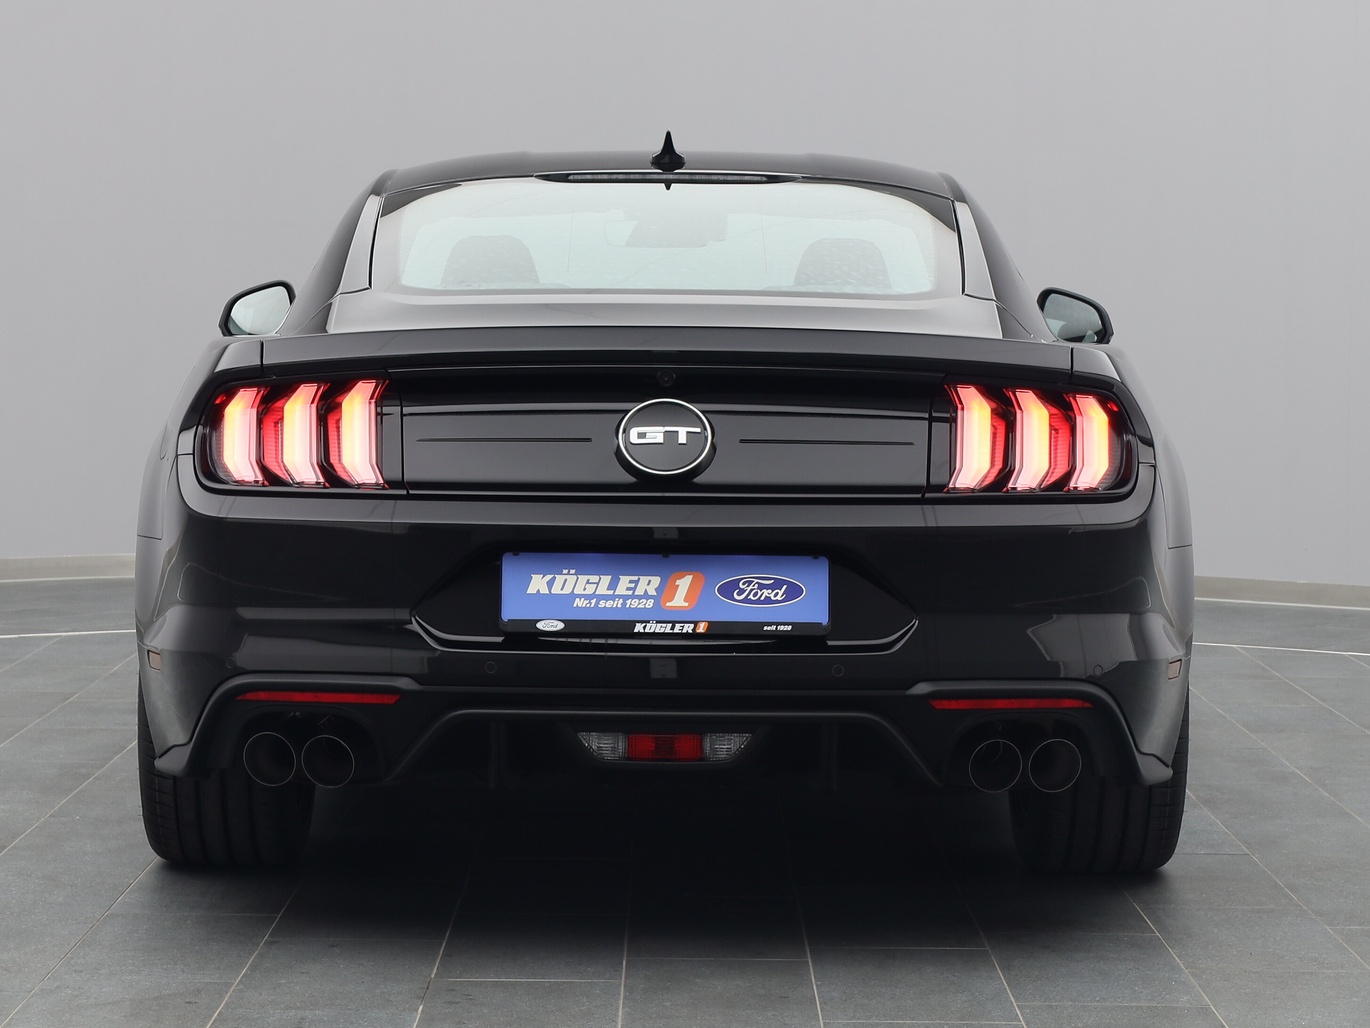 Heckansicht eines Ford Mustang GT Coupé V8 450PS Aut. / Premium 2 in Iridium Schwarz 